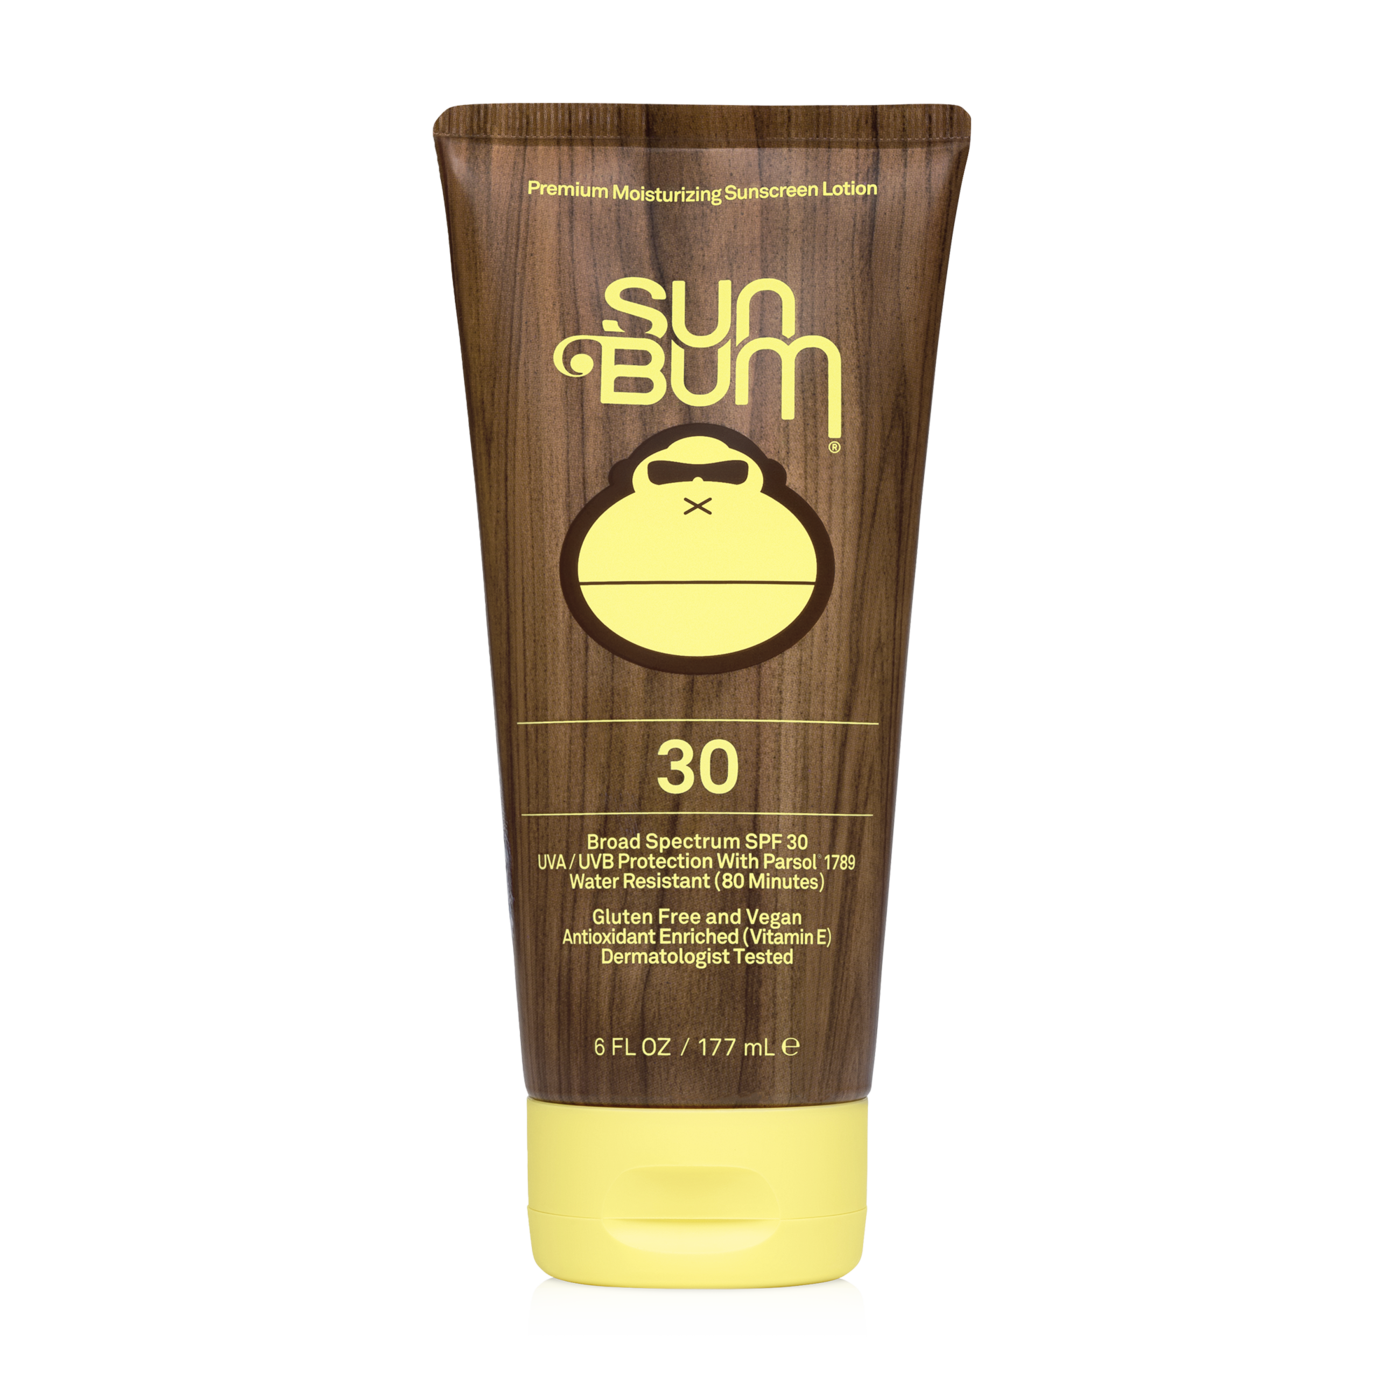 Sun Bum Sunscreen Lotion 30 SPF